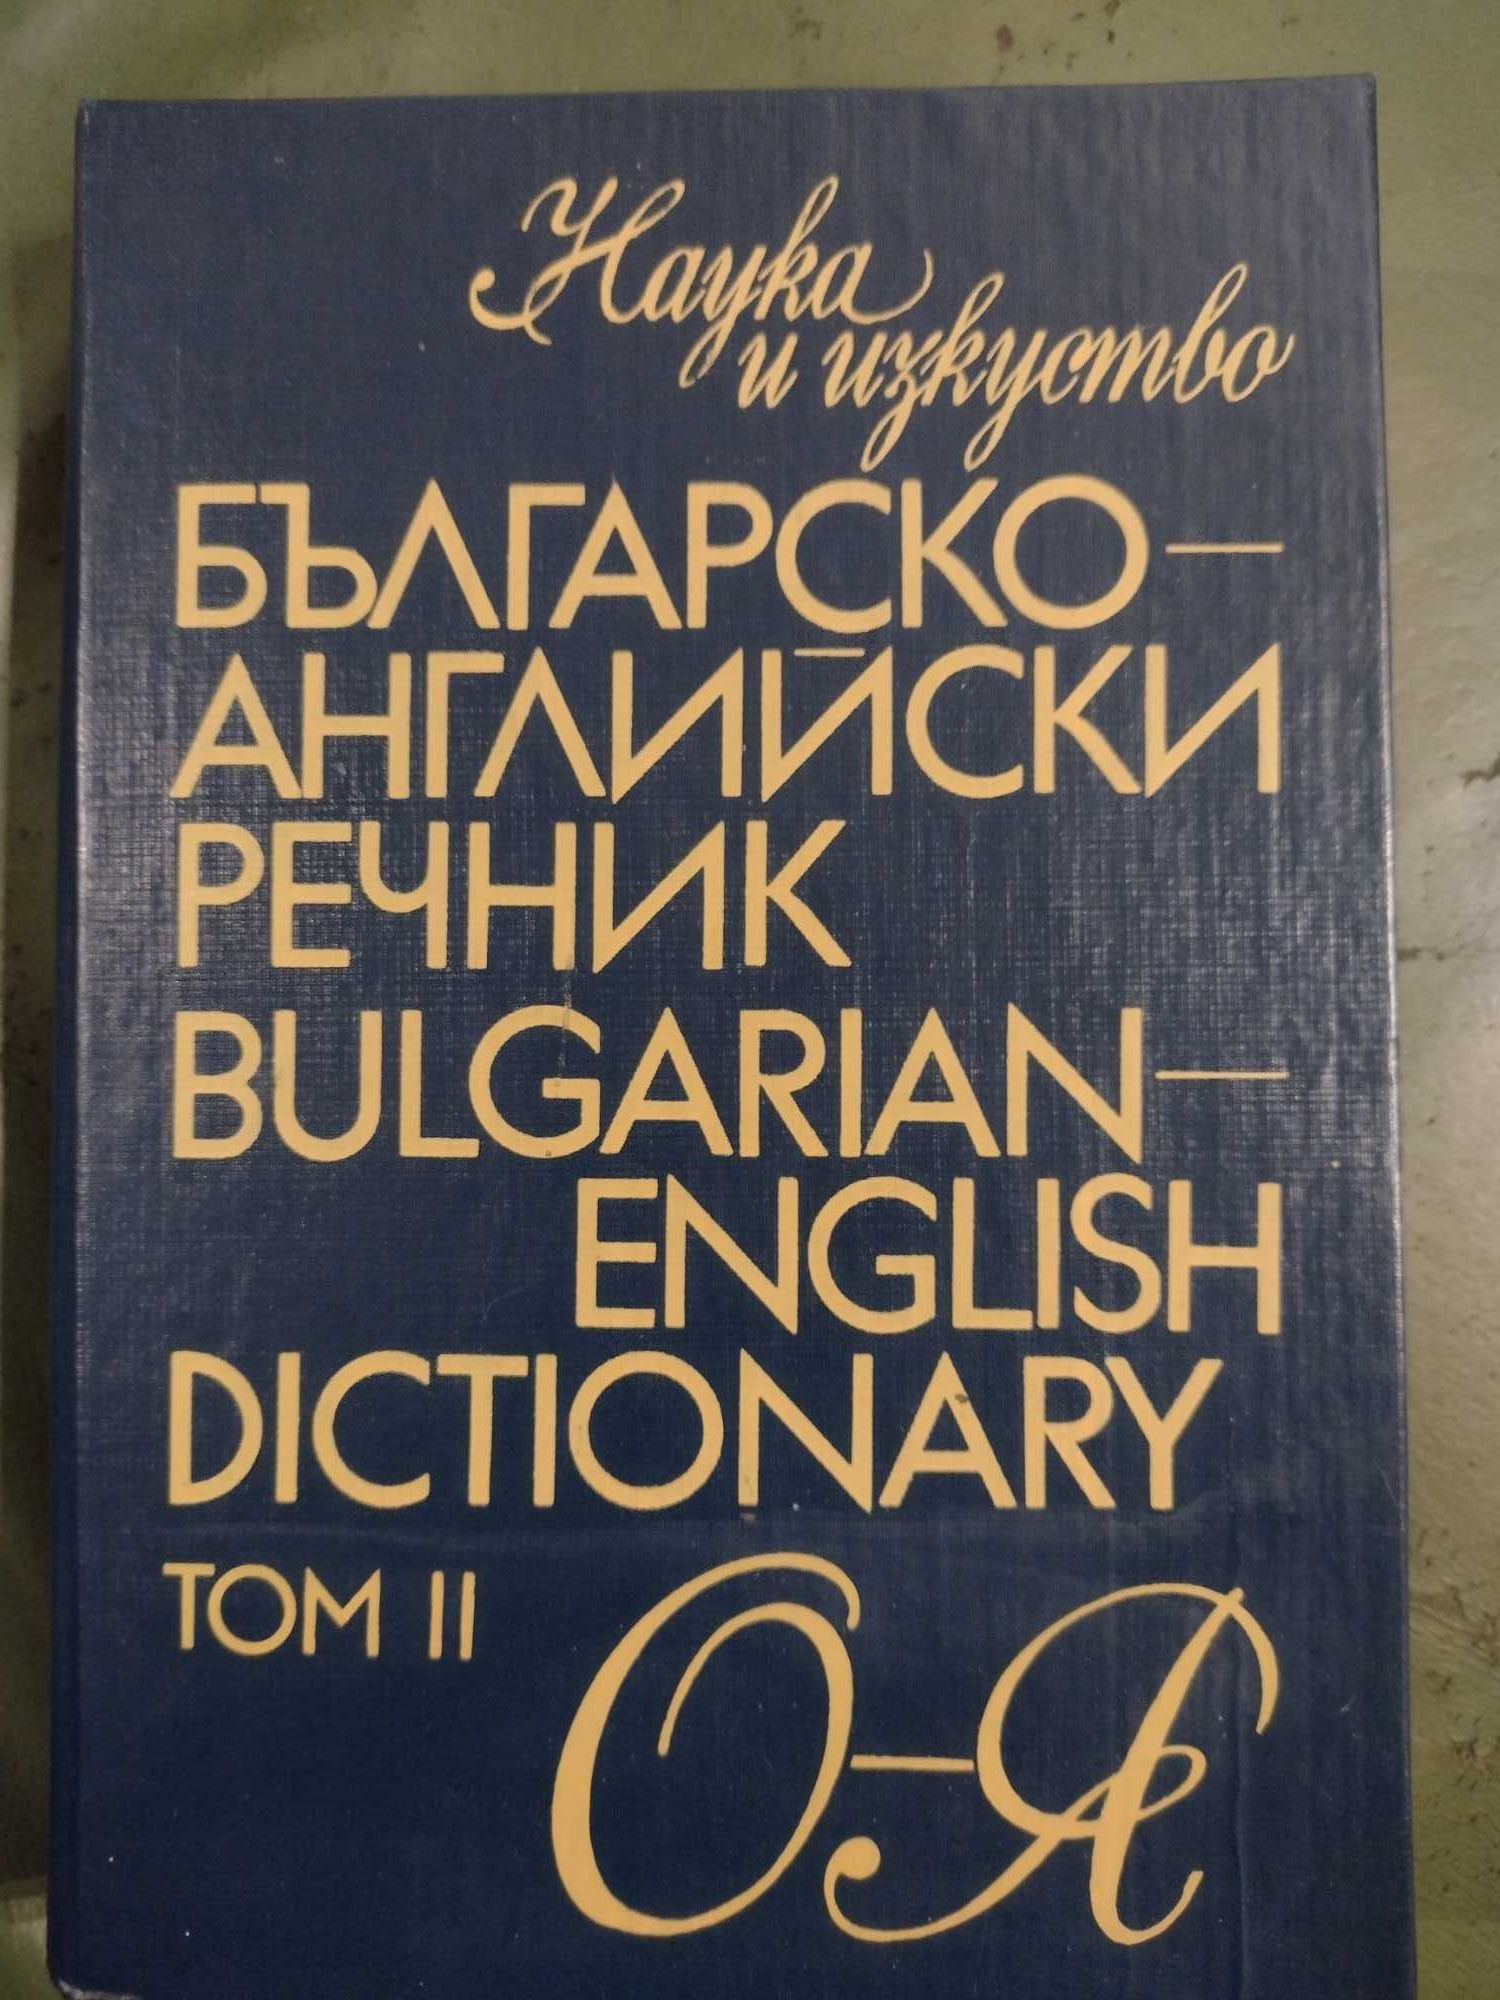 Българско-Английски речник в два тома, изд. 1993